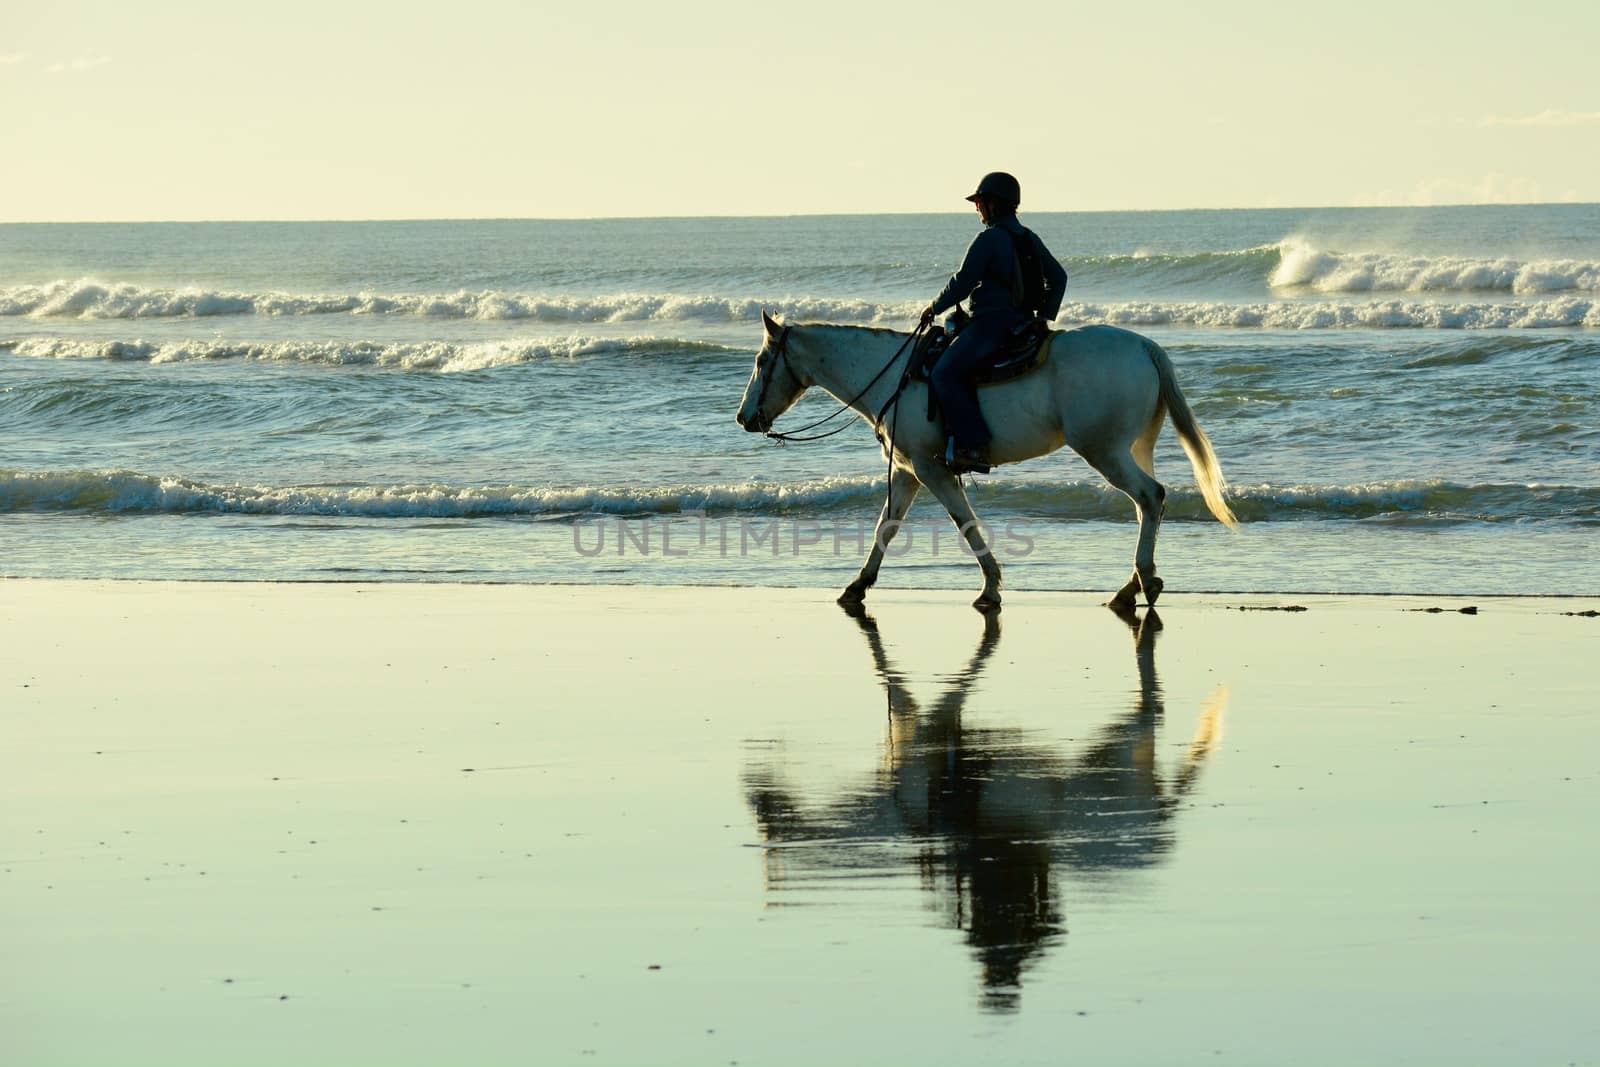 Papamoa Beach, Papamoa, New Zealand – July 07, 2019: an unidentified woman on a white horse at a seashore. by Marshalkina